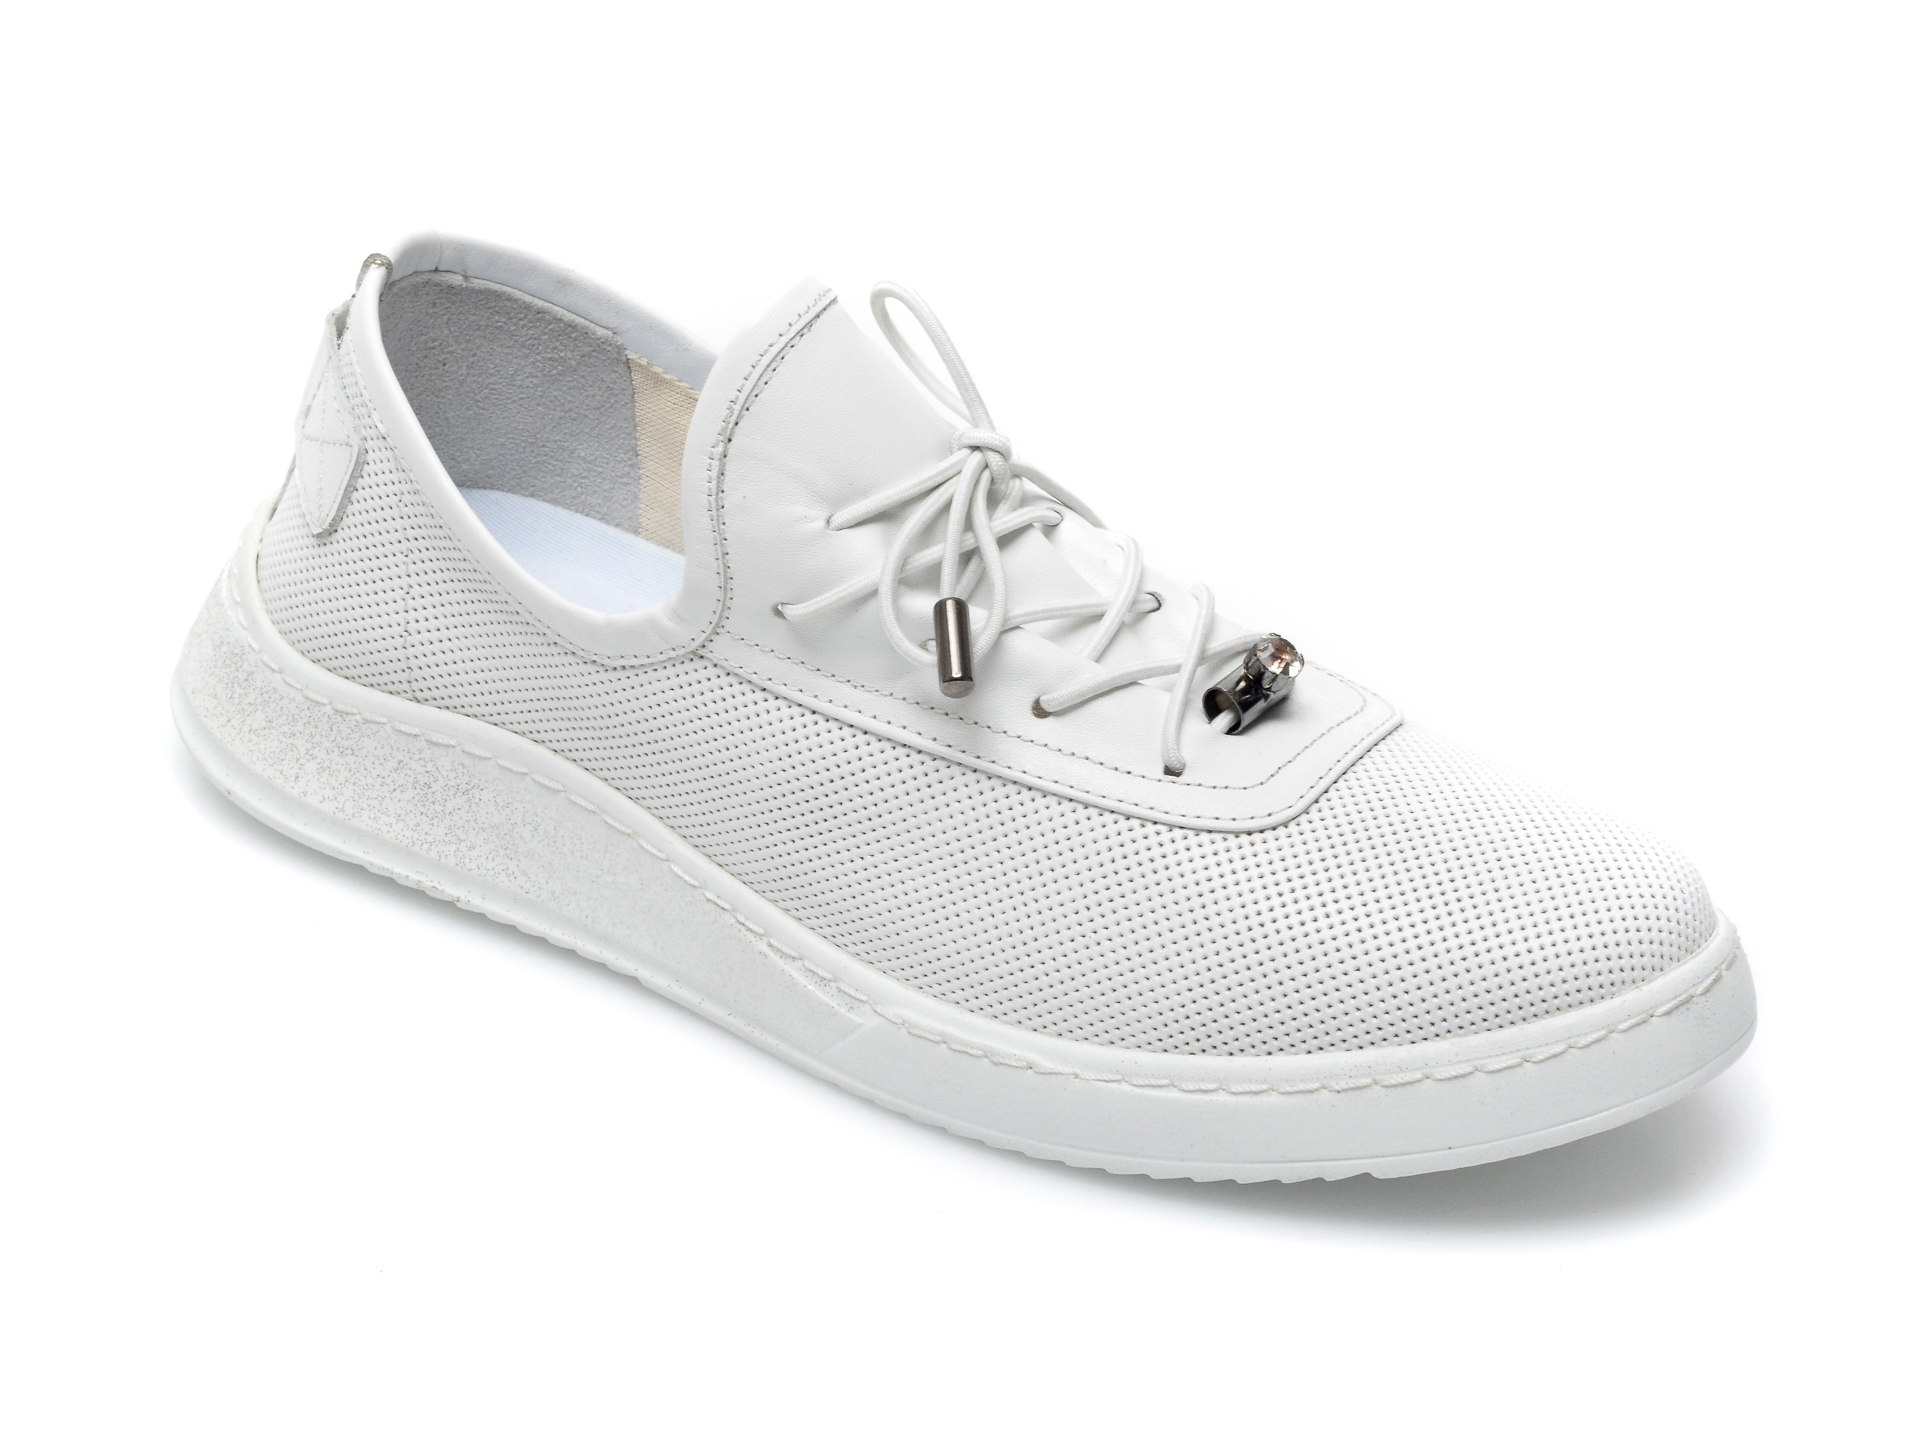 Pantofi BABOOS albi, 908, din piele naturala Baboos